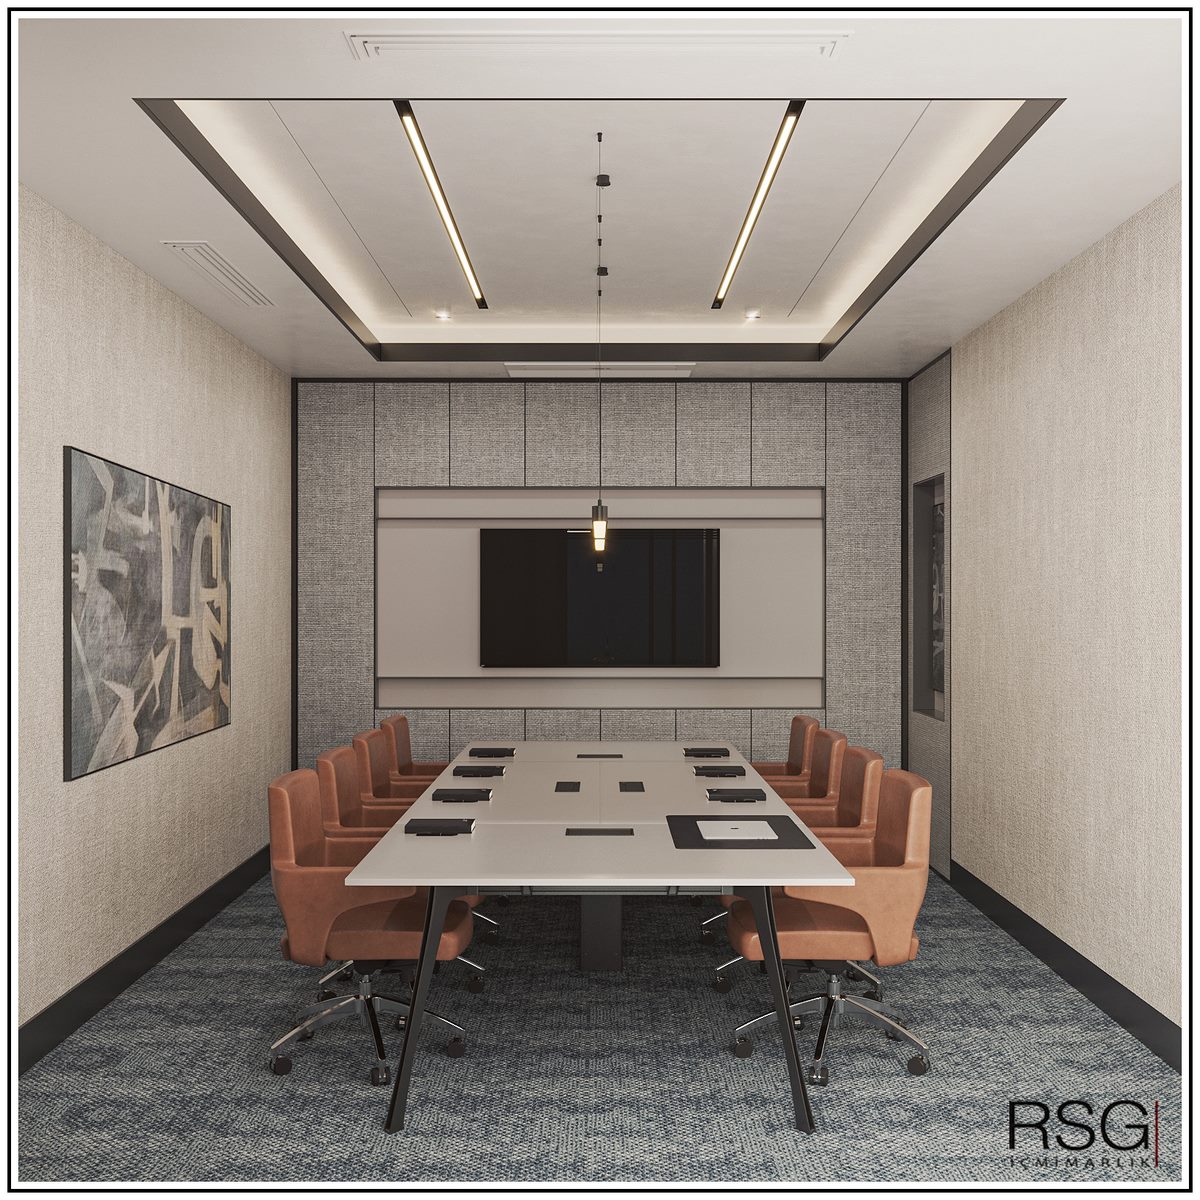 Rsg Interior Architecture lupamat 